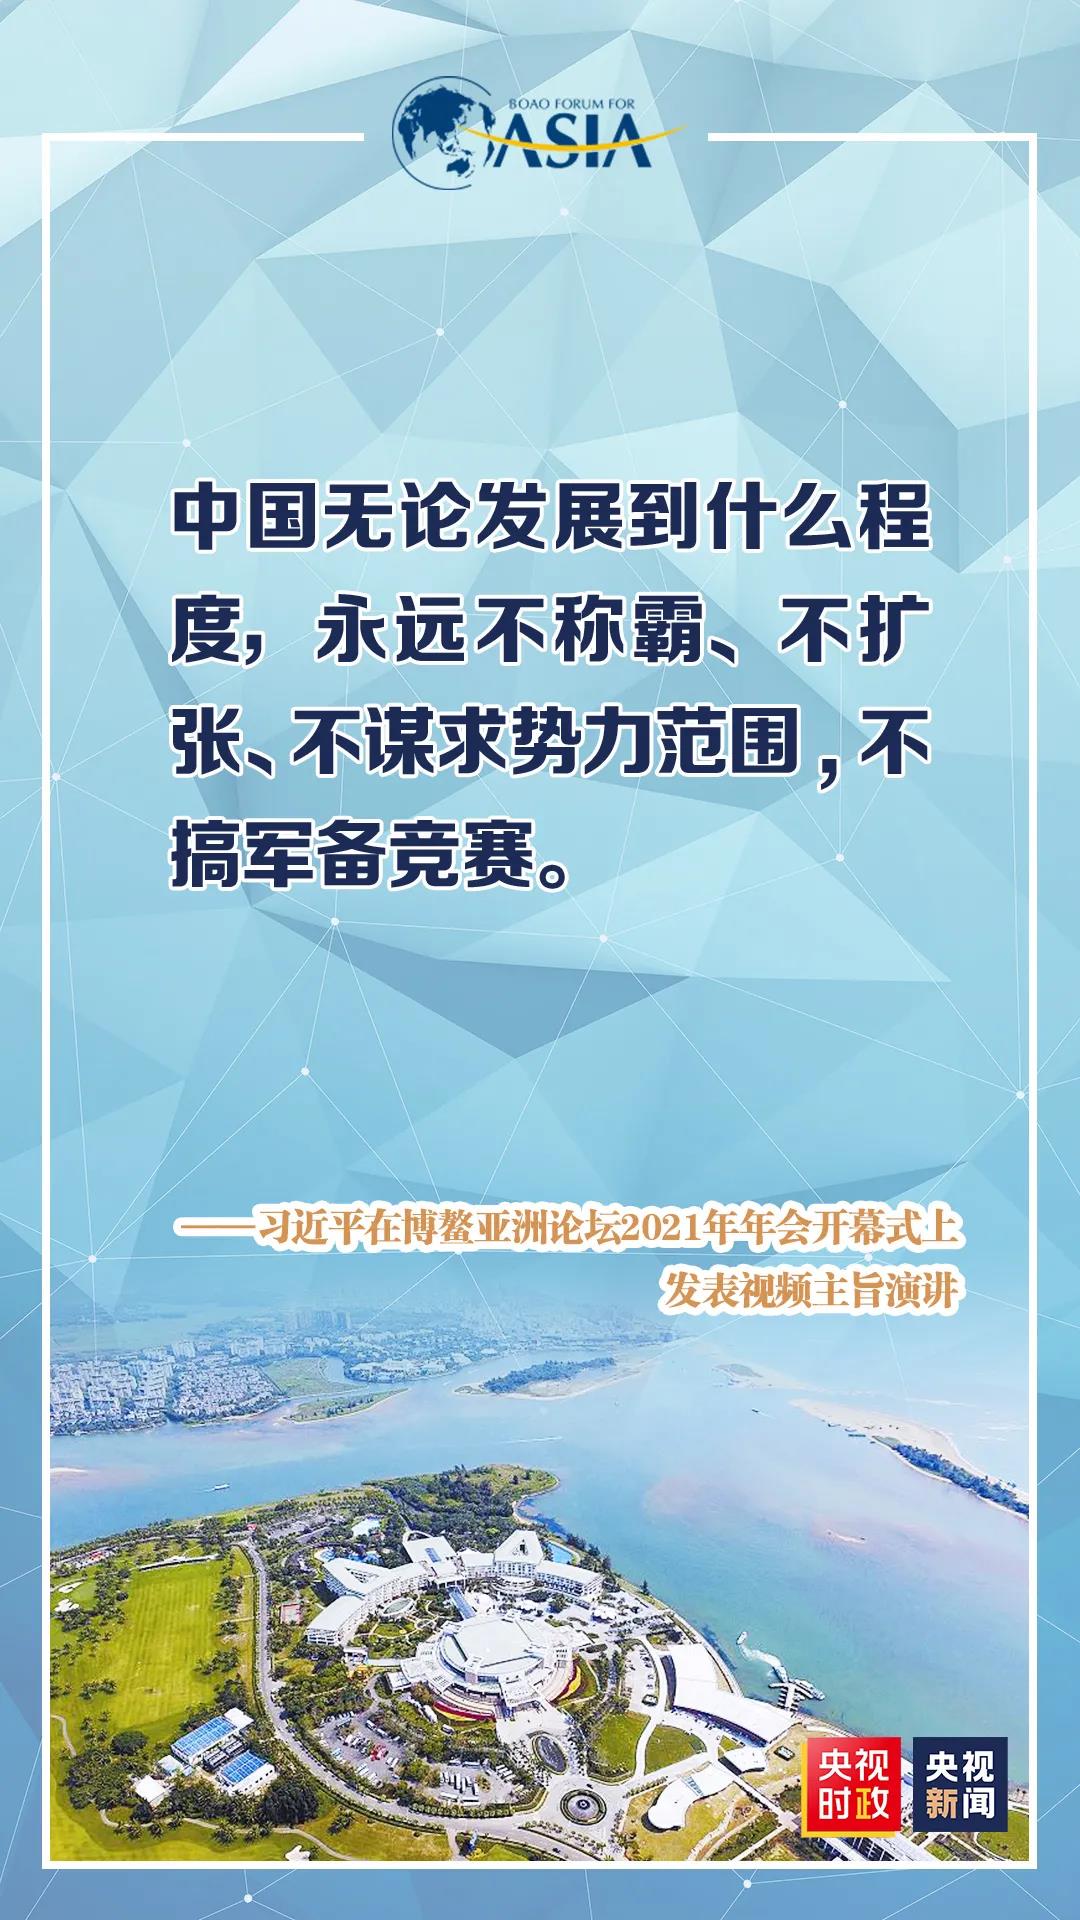 广东阳江沙滩发生水龙卷 安全保卫吹哨督促驻足游客紧急避险